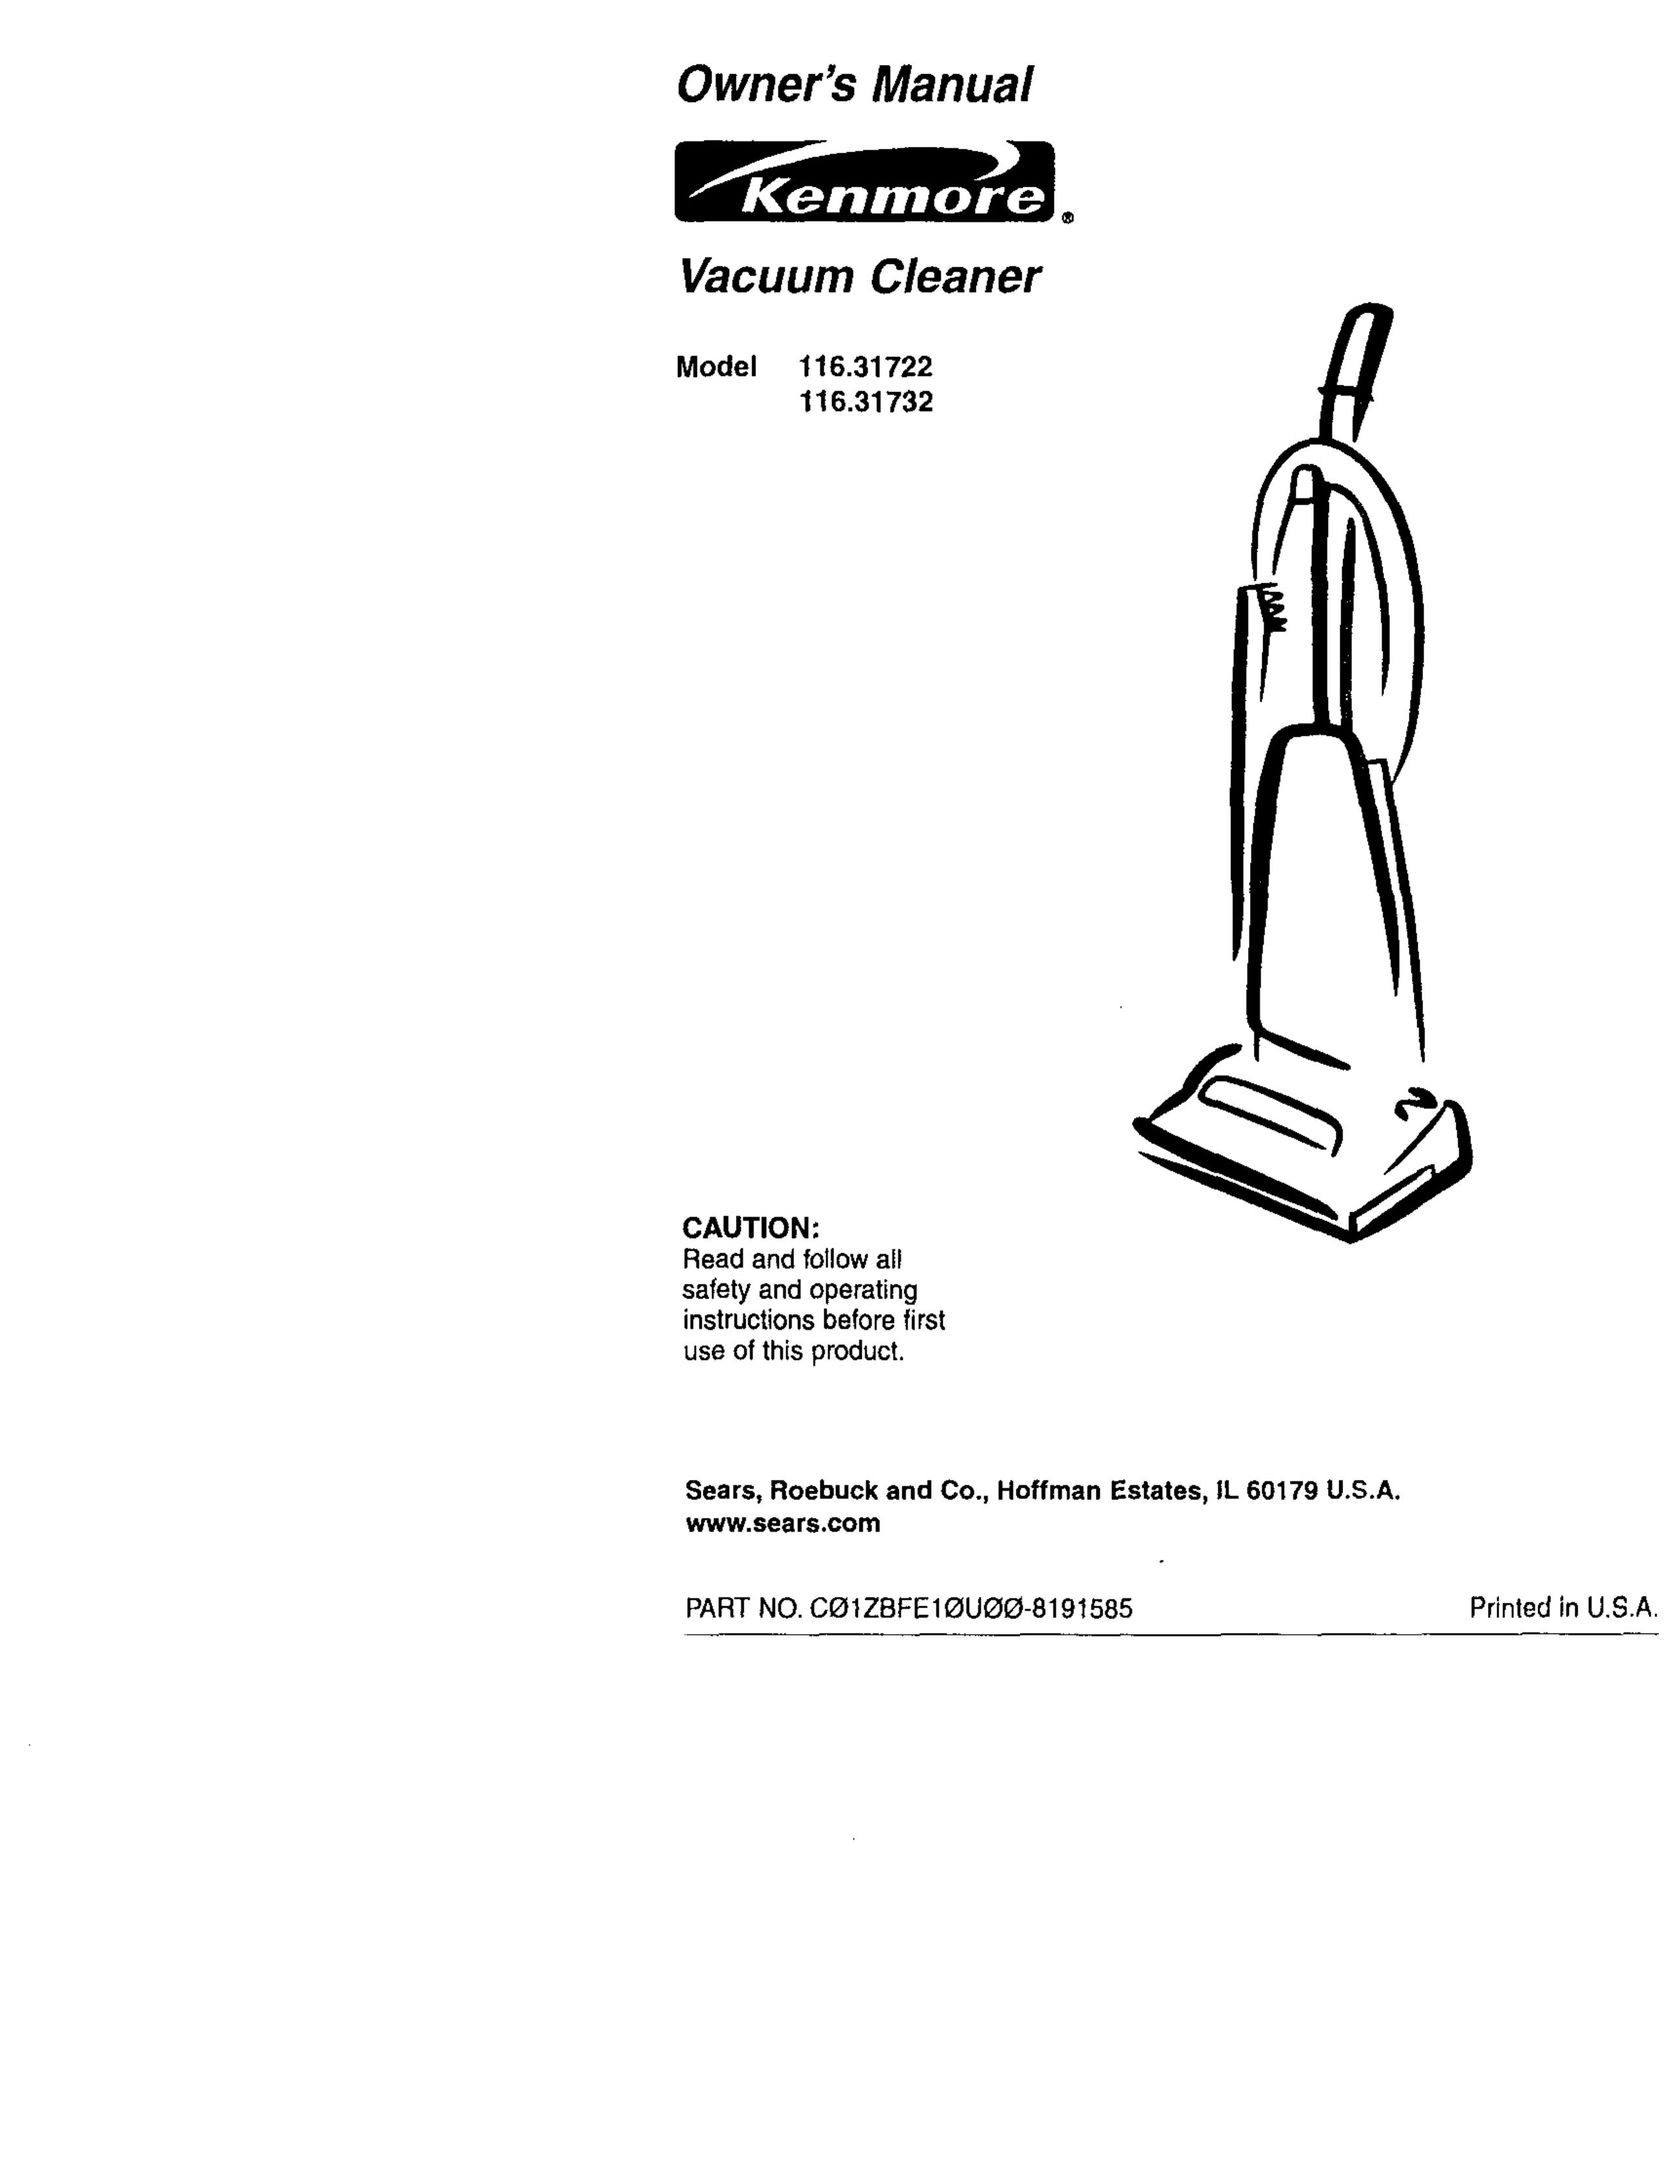 Kenmore 116.31722 Vacuum Cleaner User Manual